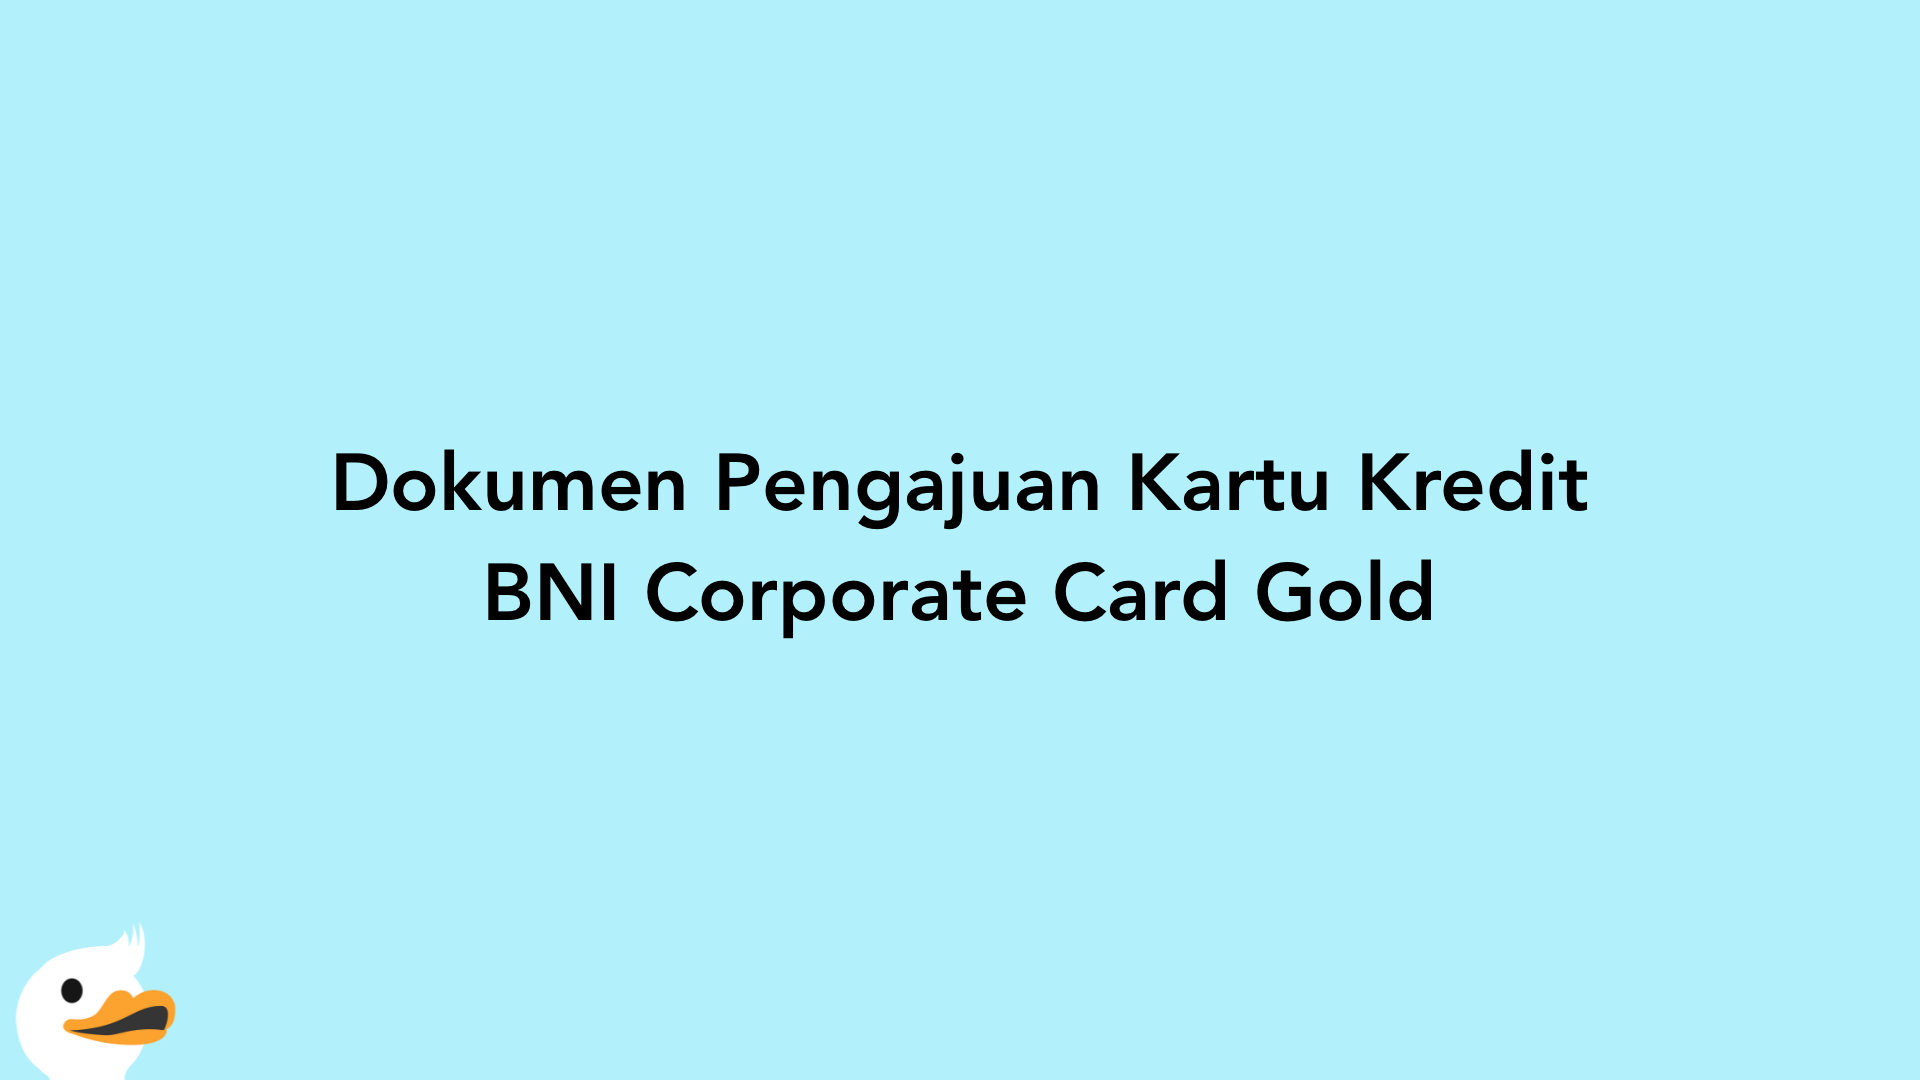 Dokumen Pengajuan Kartu Kredit BNI Corporate Card Gold